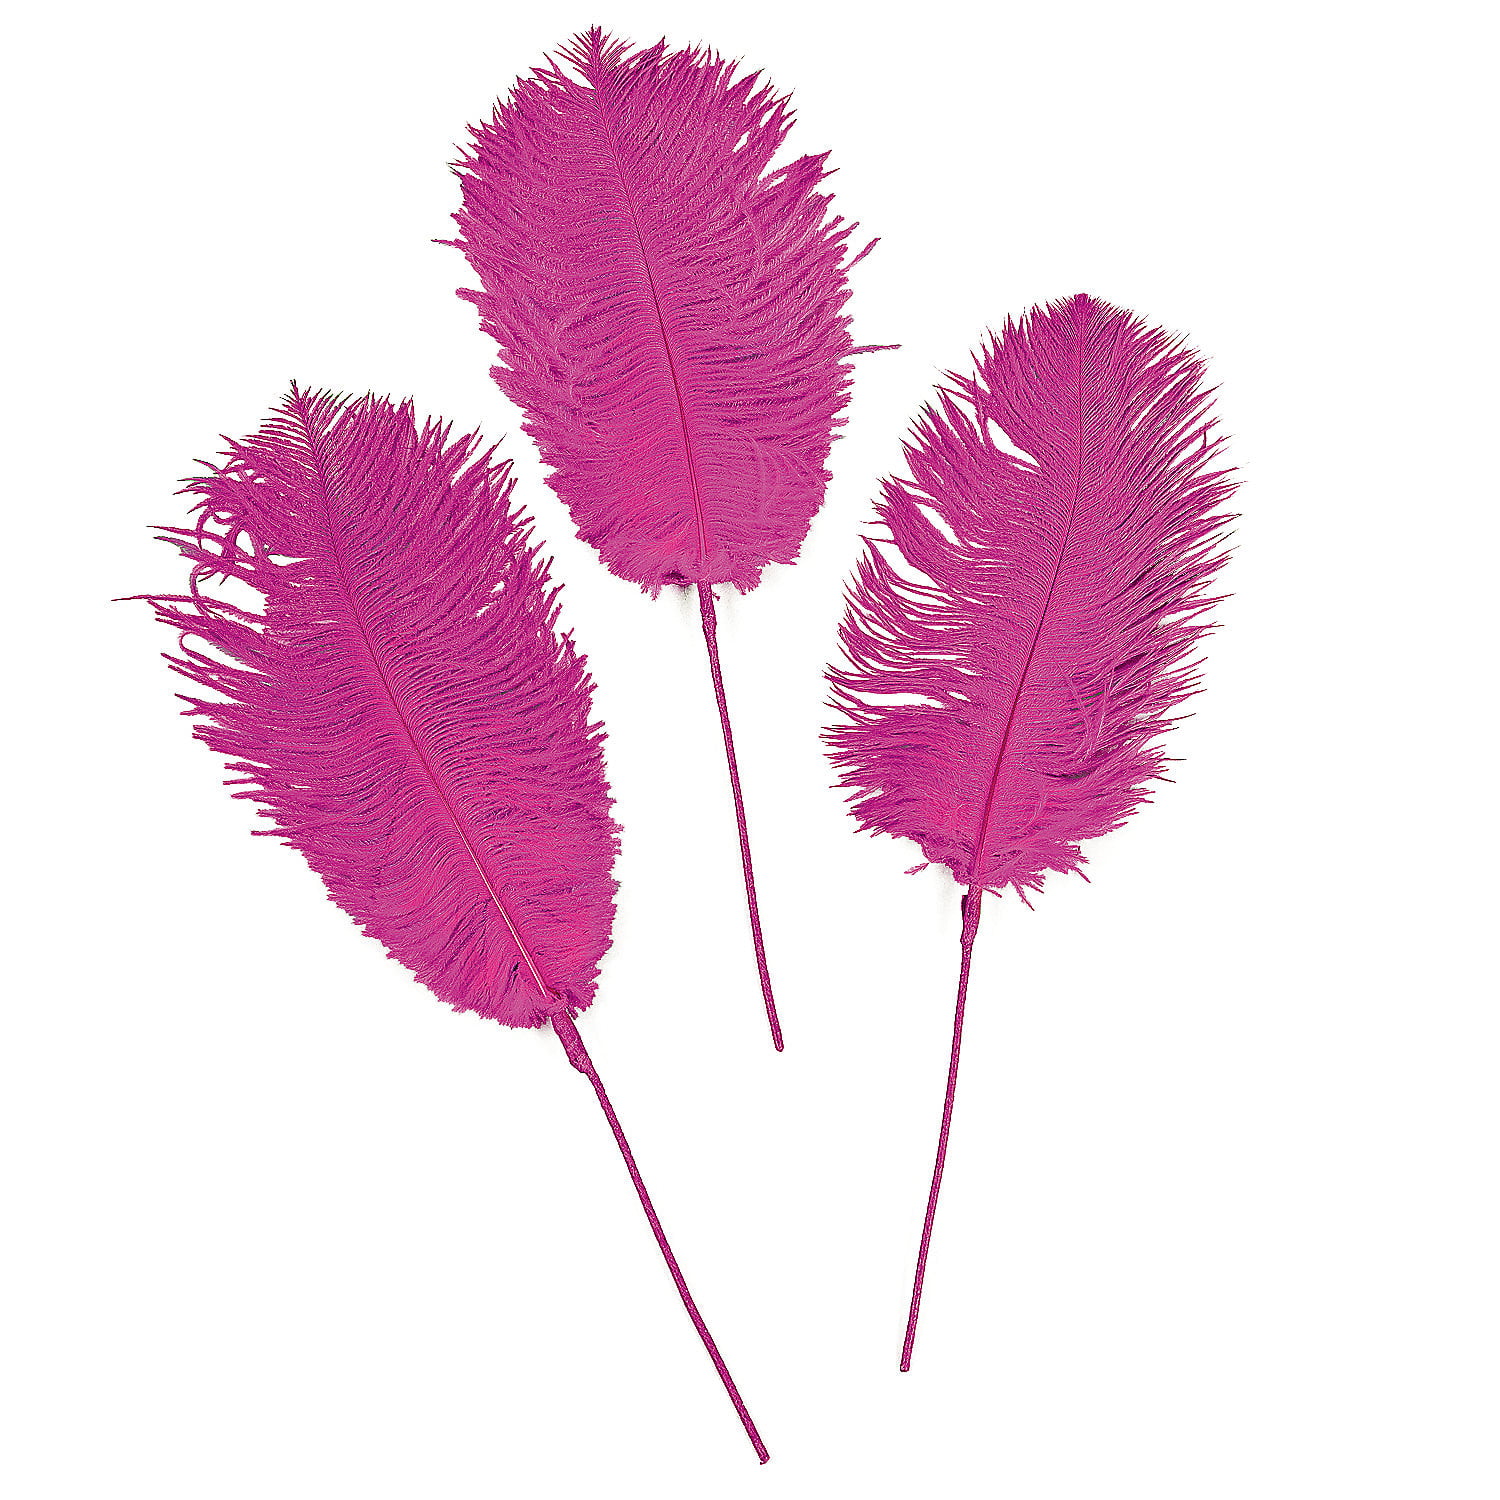 Hot Pink Ostrich Feathers - Craft Supplies - 12 Pieces - Walmart.com ...